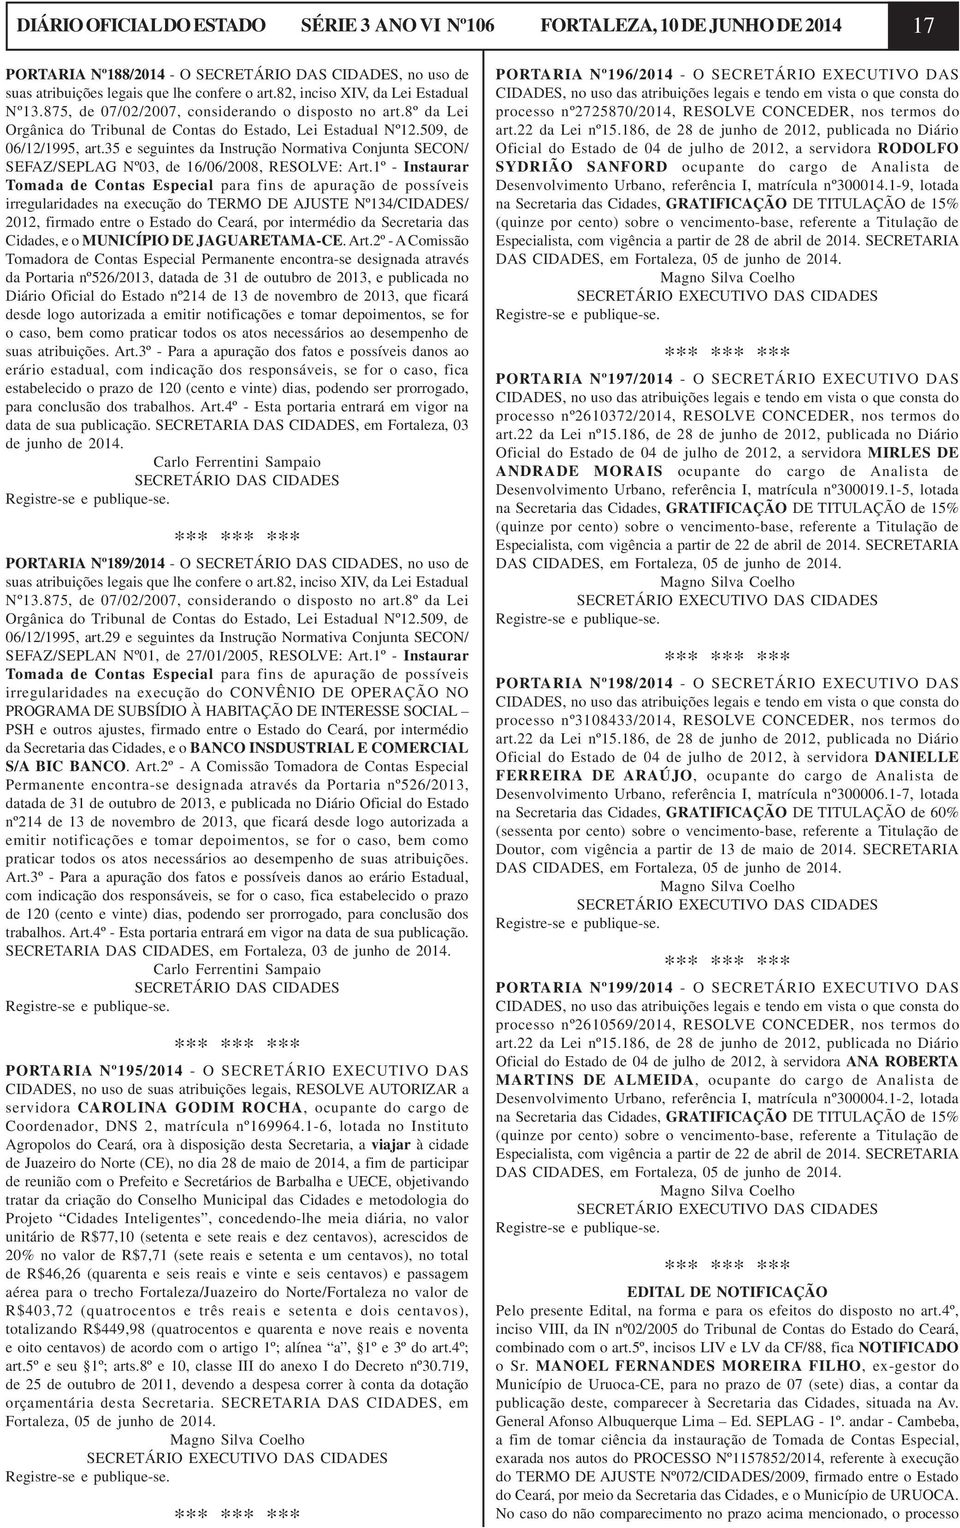 35 e seguintes da Instrução Normativa Conjunta SECON/ SEFAZ/SEPLAG Nº03, de 16/06/2008, RESOLVE: Art.